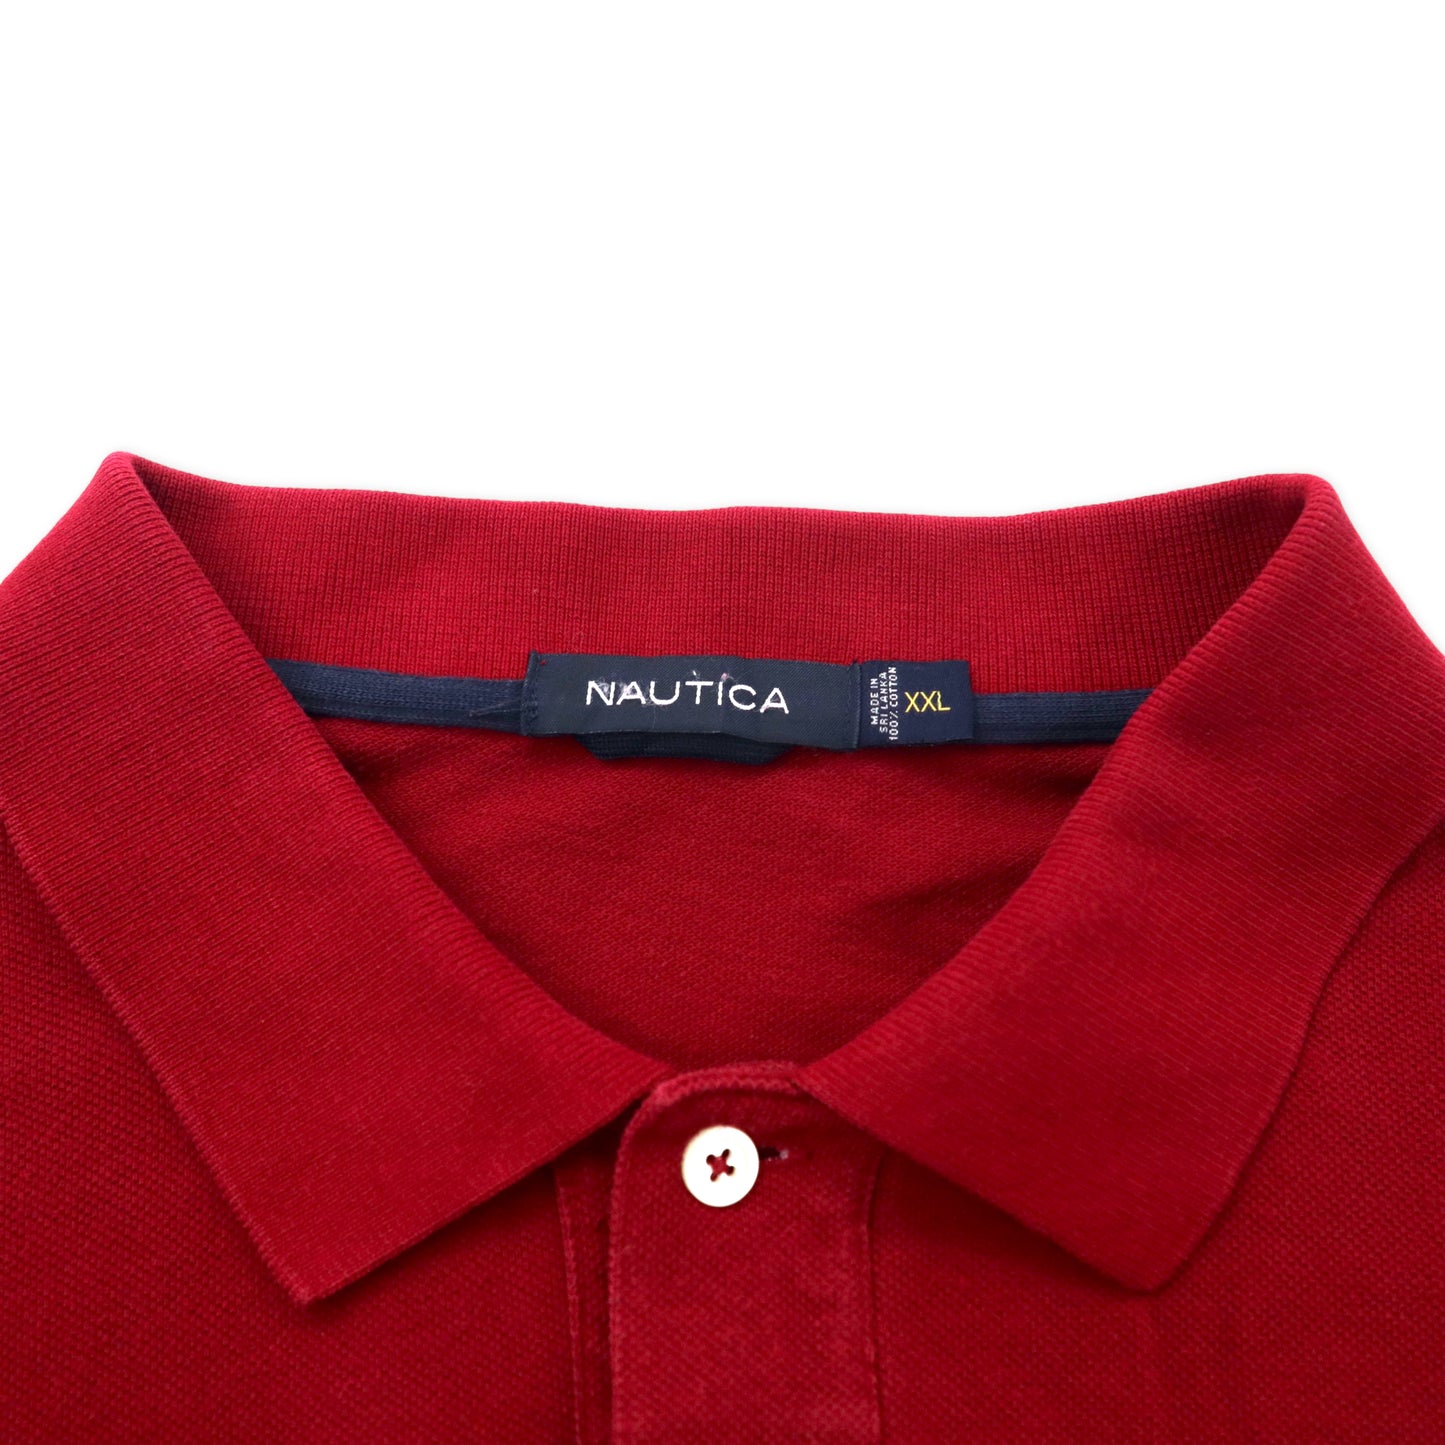 NAUTICA 長袖ポロシャツ XXL レッド コットン ワンポイントロゴ刺繍 ビッグサイズ